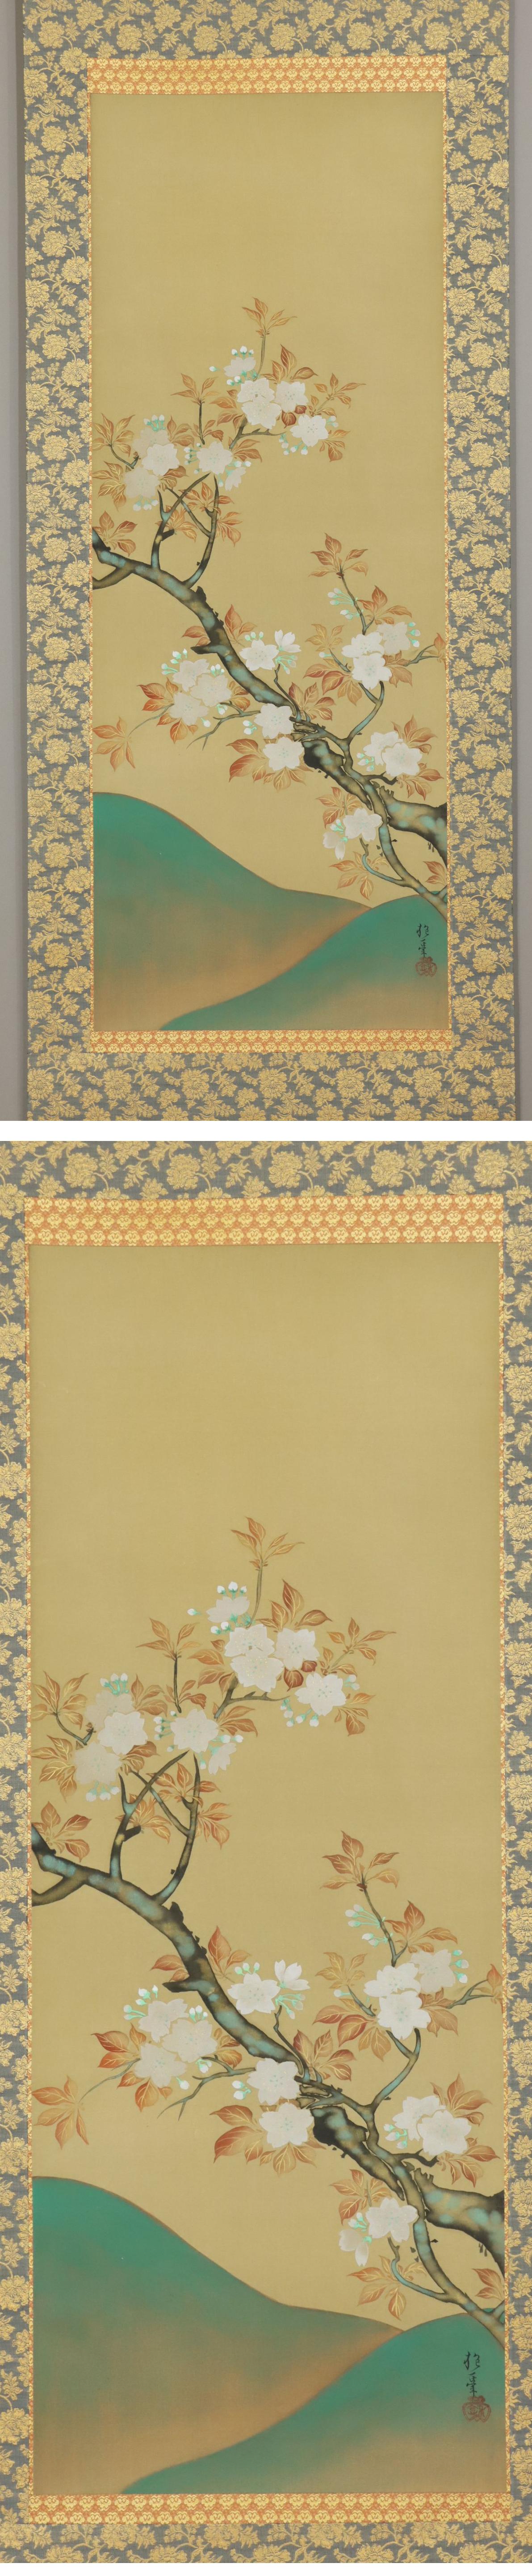 【人気定番HOT】◆酒井抱一◆山桜◆日本画◆手彩色◆二重箱◆絹本◆掛軸◆m561 花鳥、鳥獣